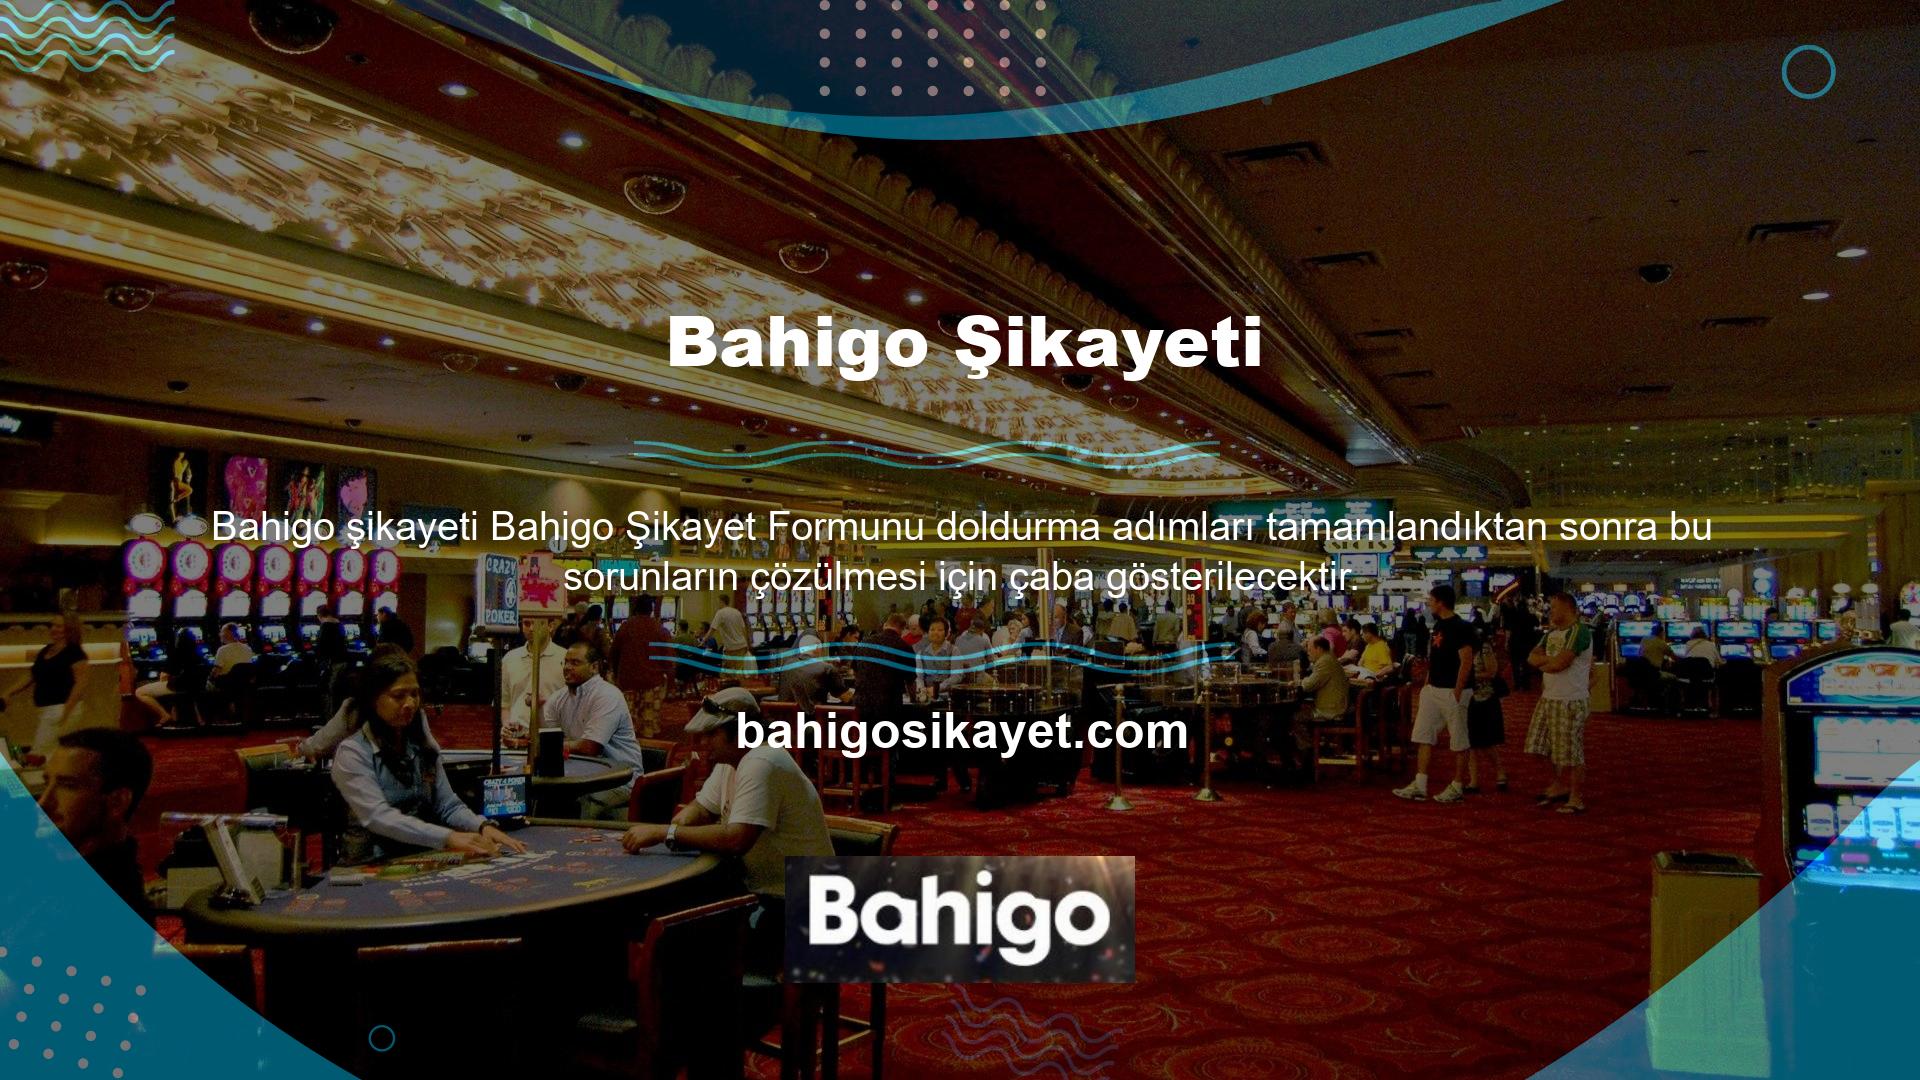 Bahigo şikayeti giriş adresindeki bir değişiklikten kaynaklanıyorsa, erişim adımını tamamlamak için web sitesi yetkilisi tarafından gönderilen nihai alan adını kullanmak daha mantıklıdır